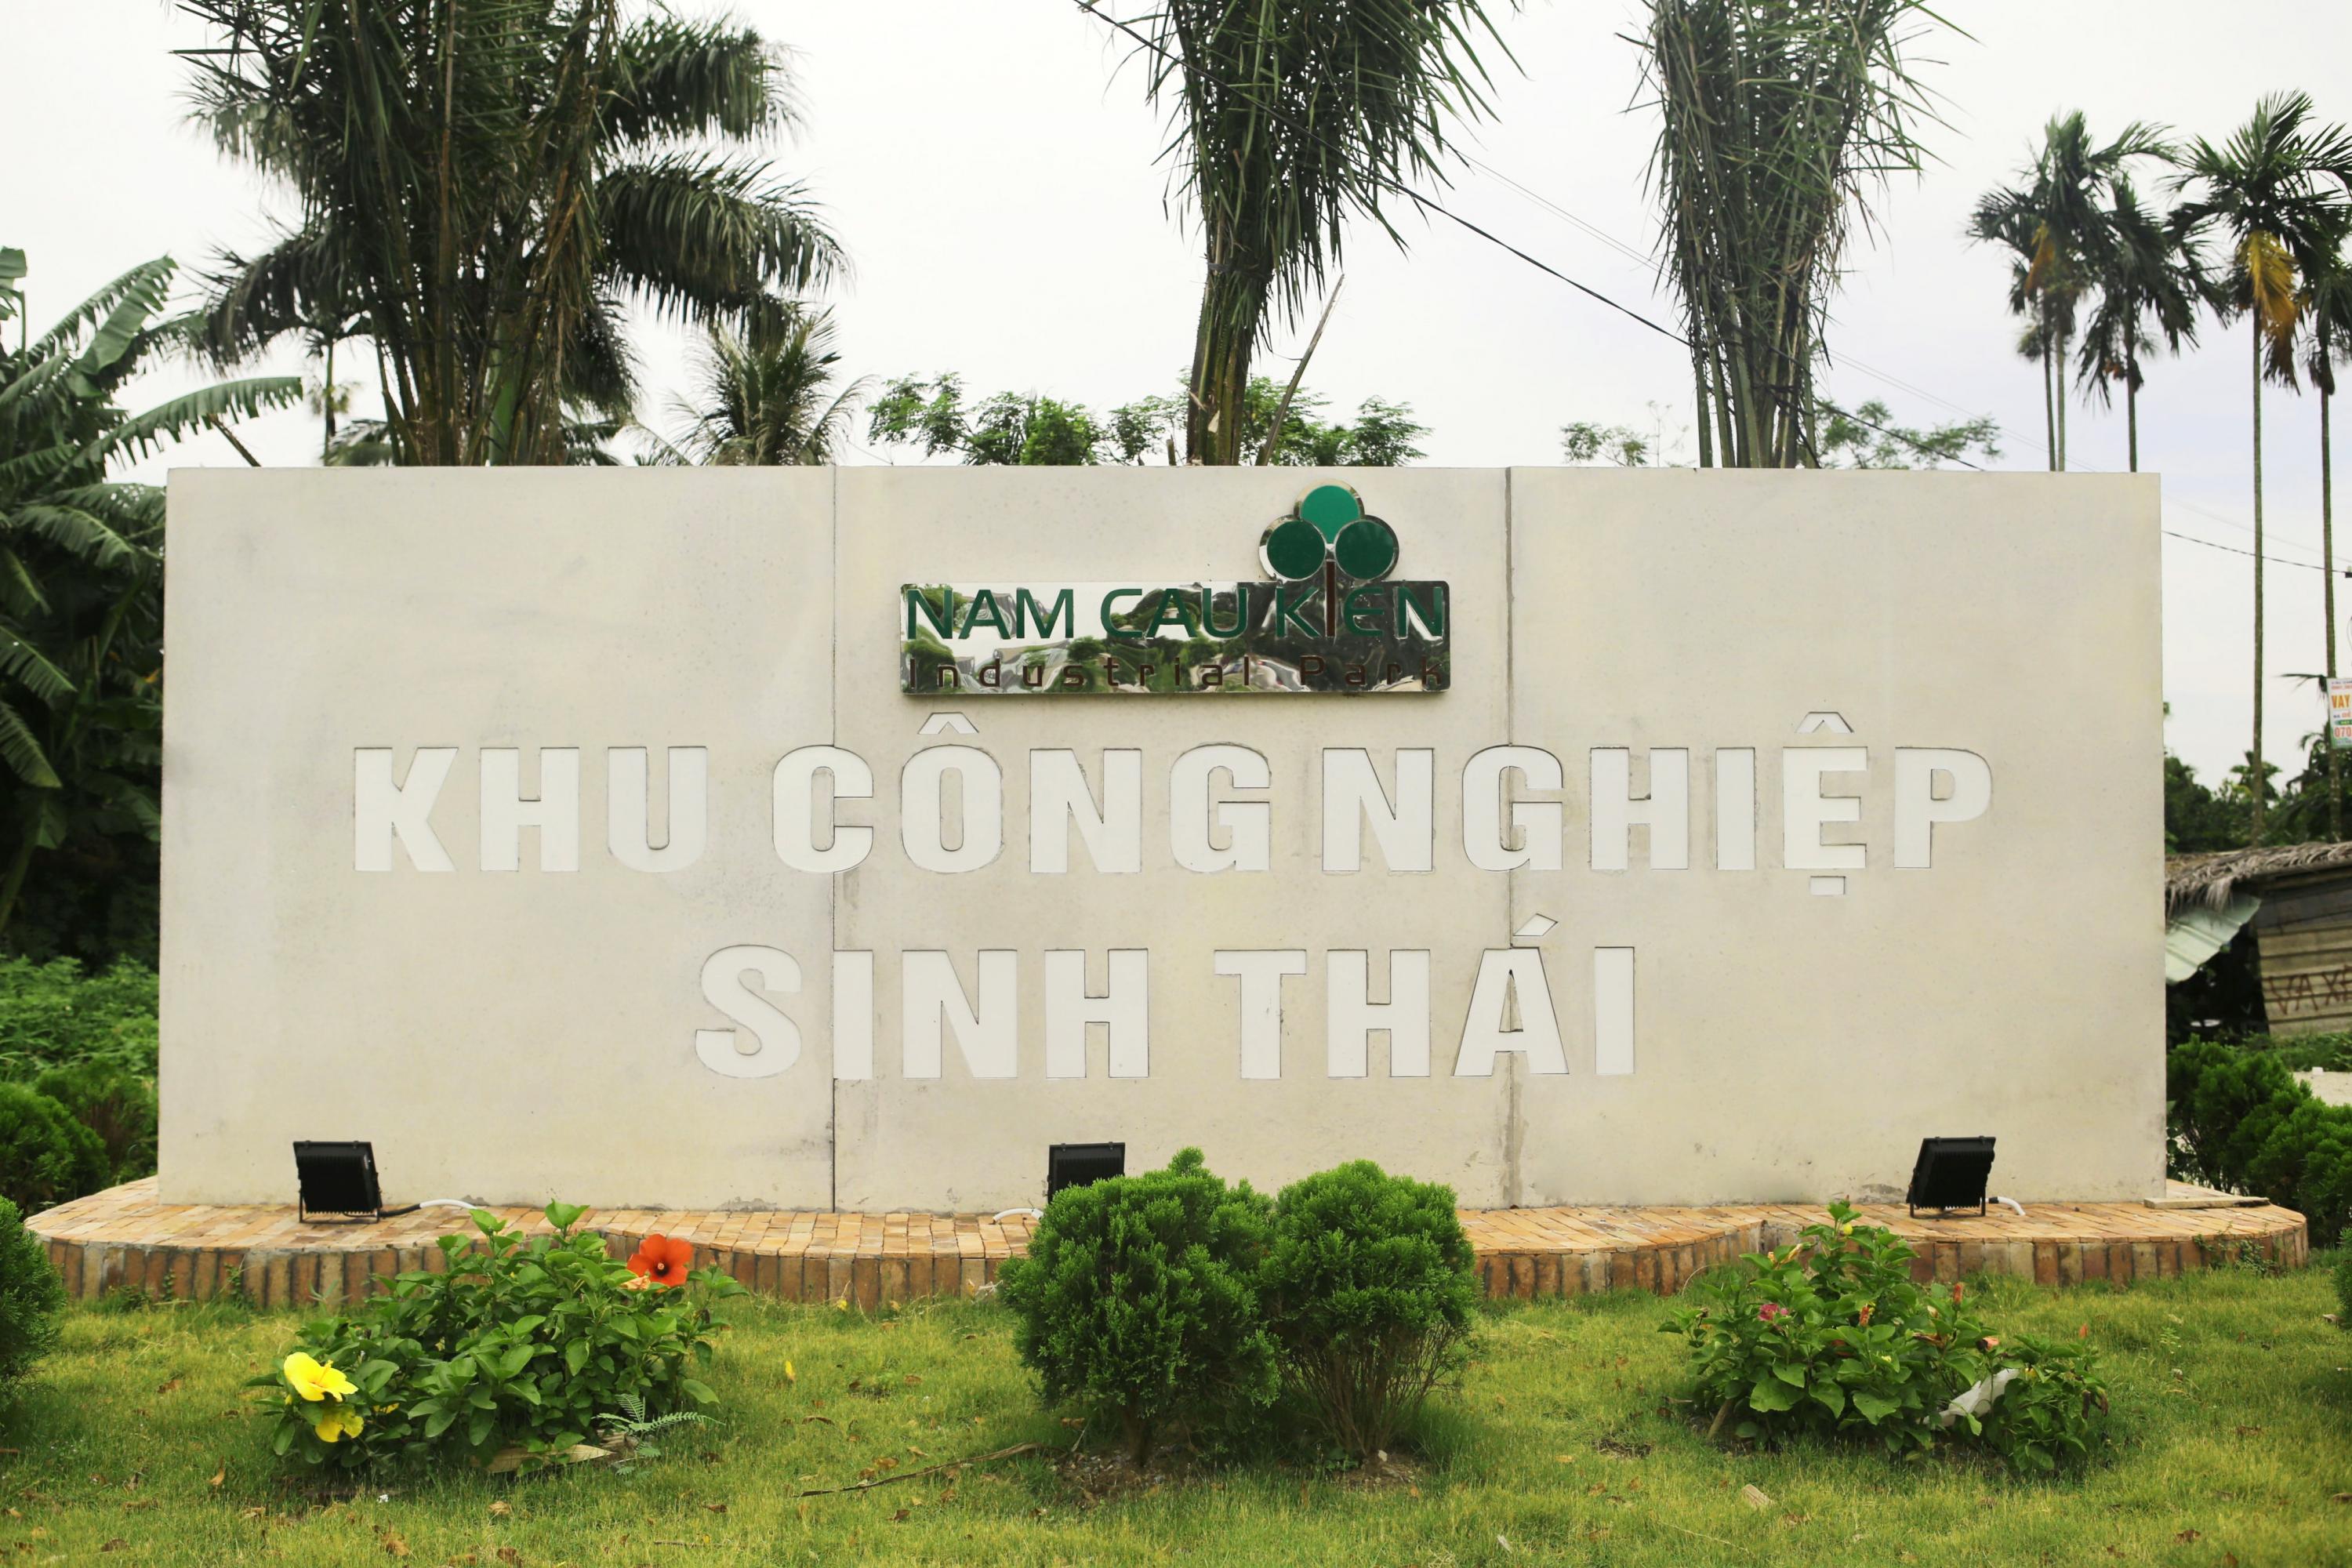 Biển hiệu KCN Nam Cầu Kiền